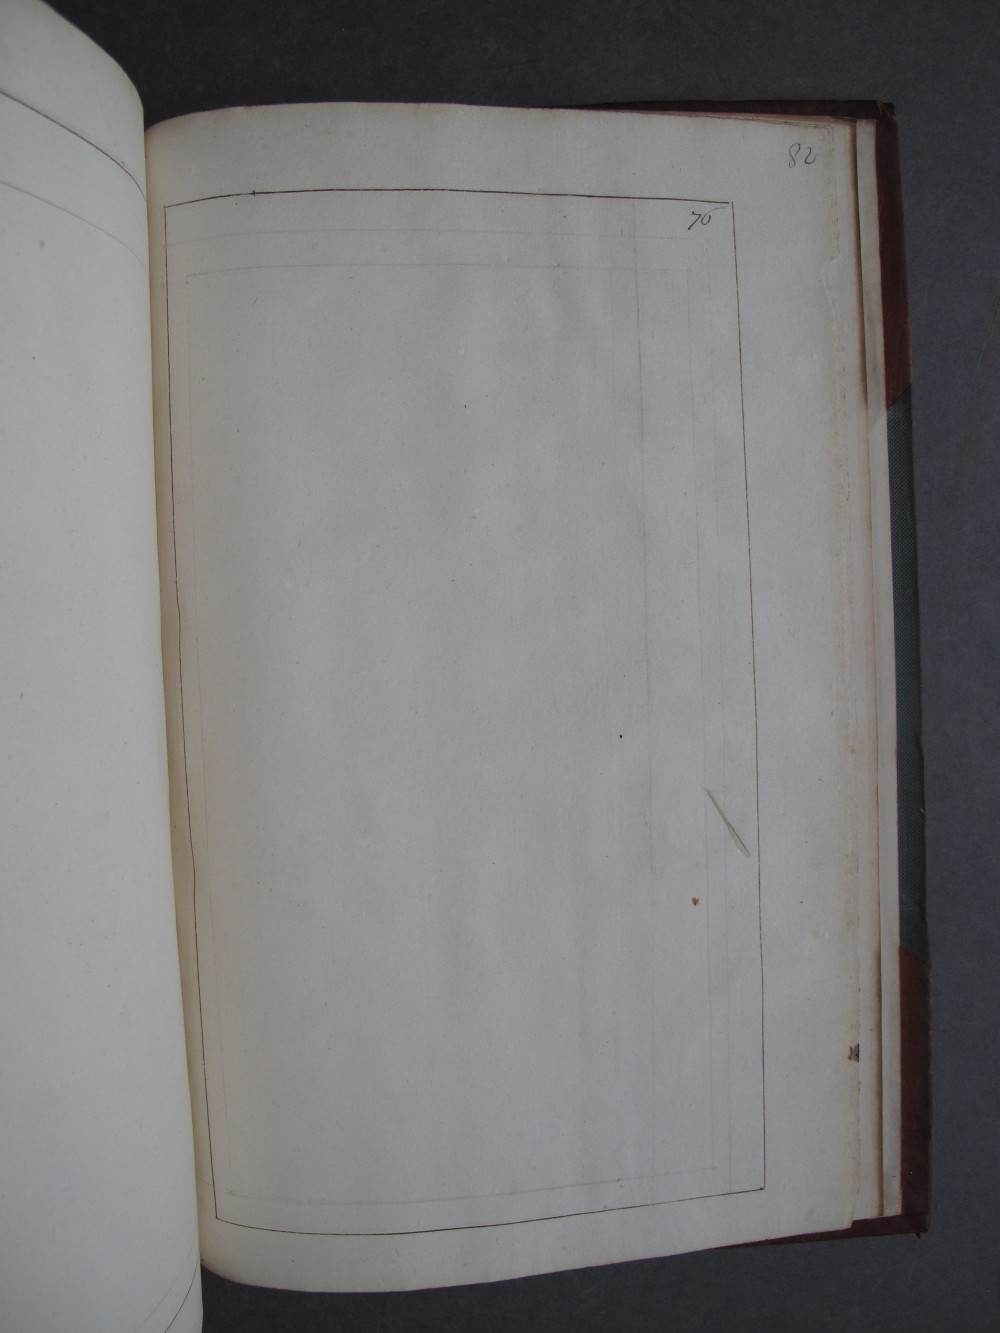 Folio 76 recto